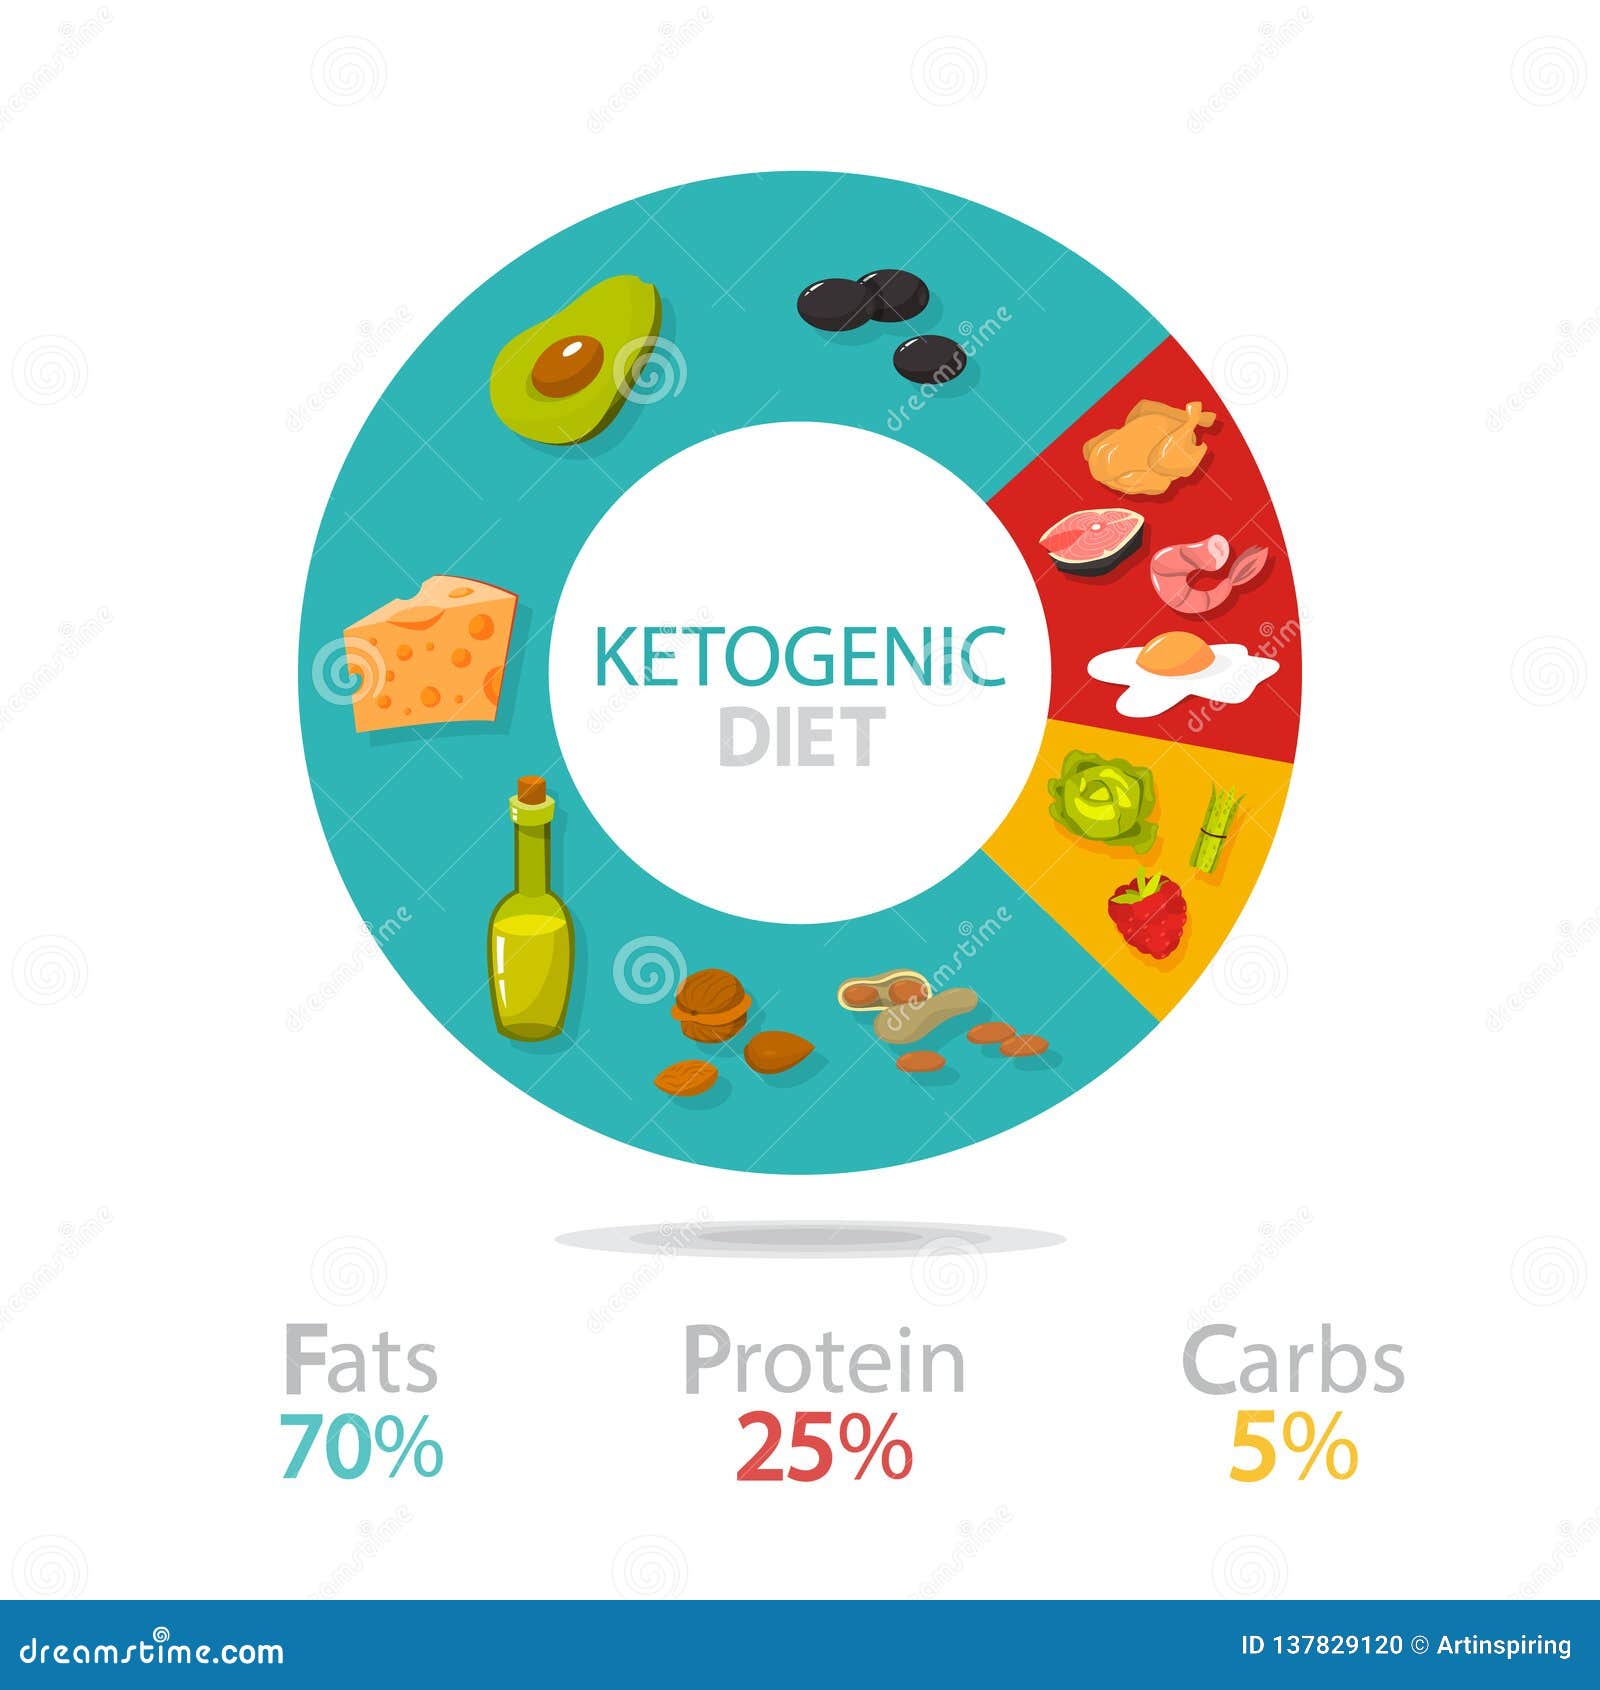 keto diet plan food percentages